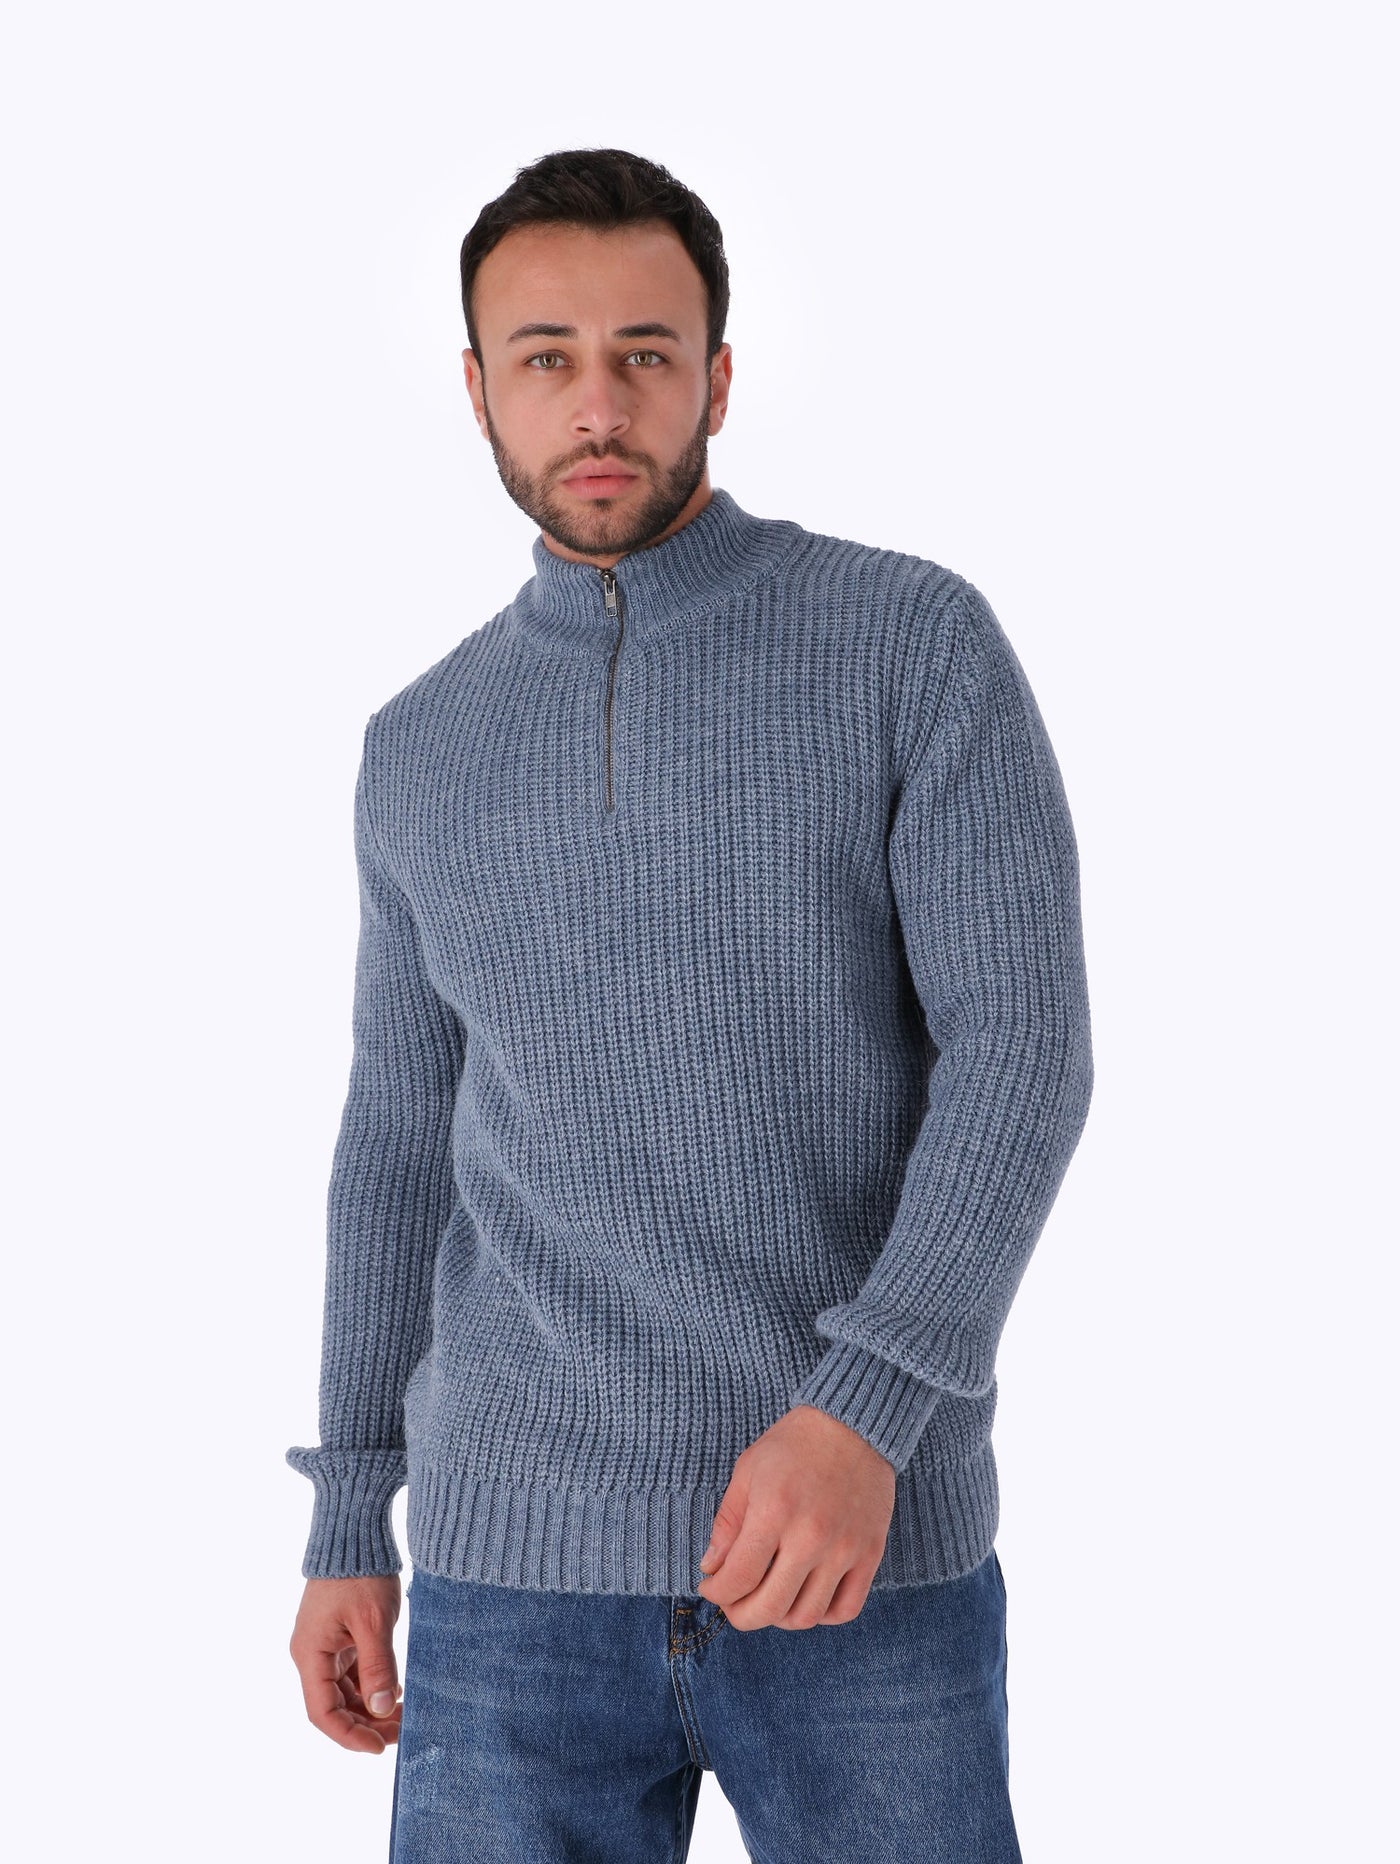 OR Men's Front Zip Sweater